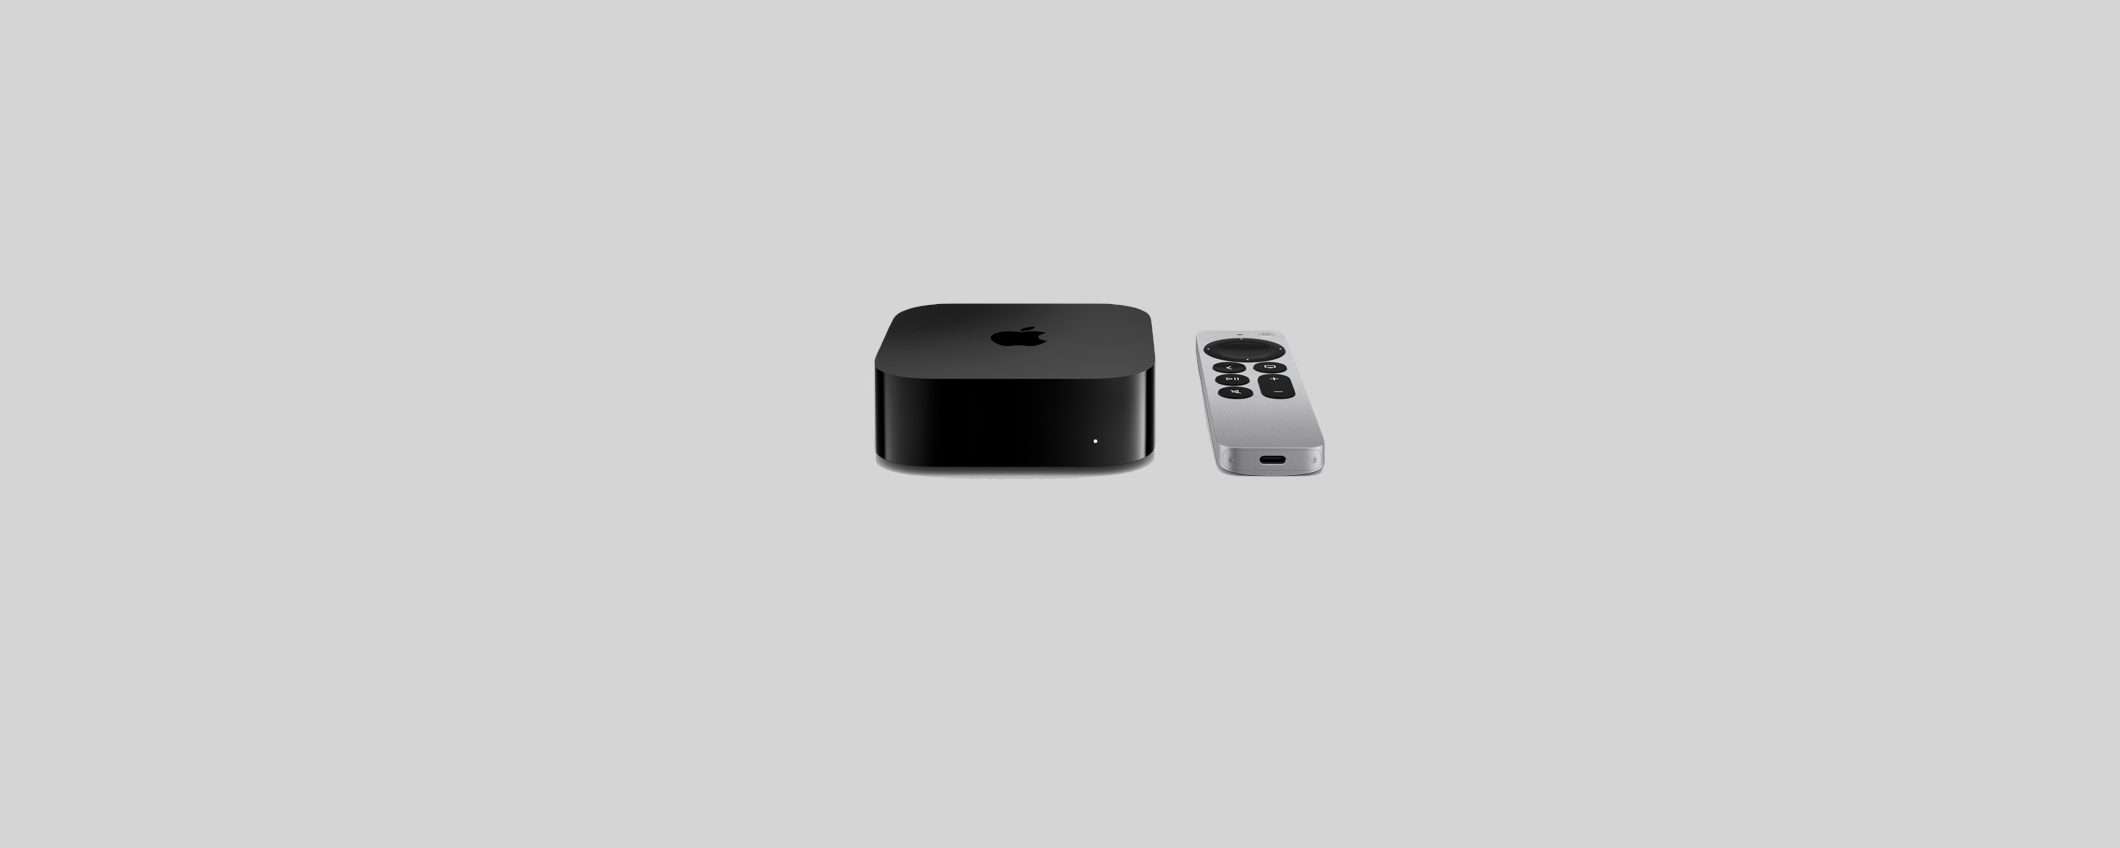 Apple TV 4K 20222: risolto il bug dello storage